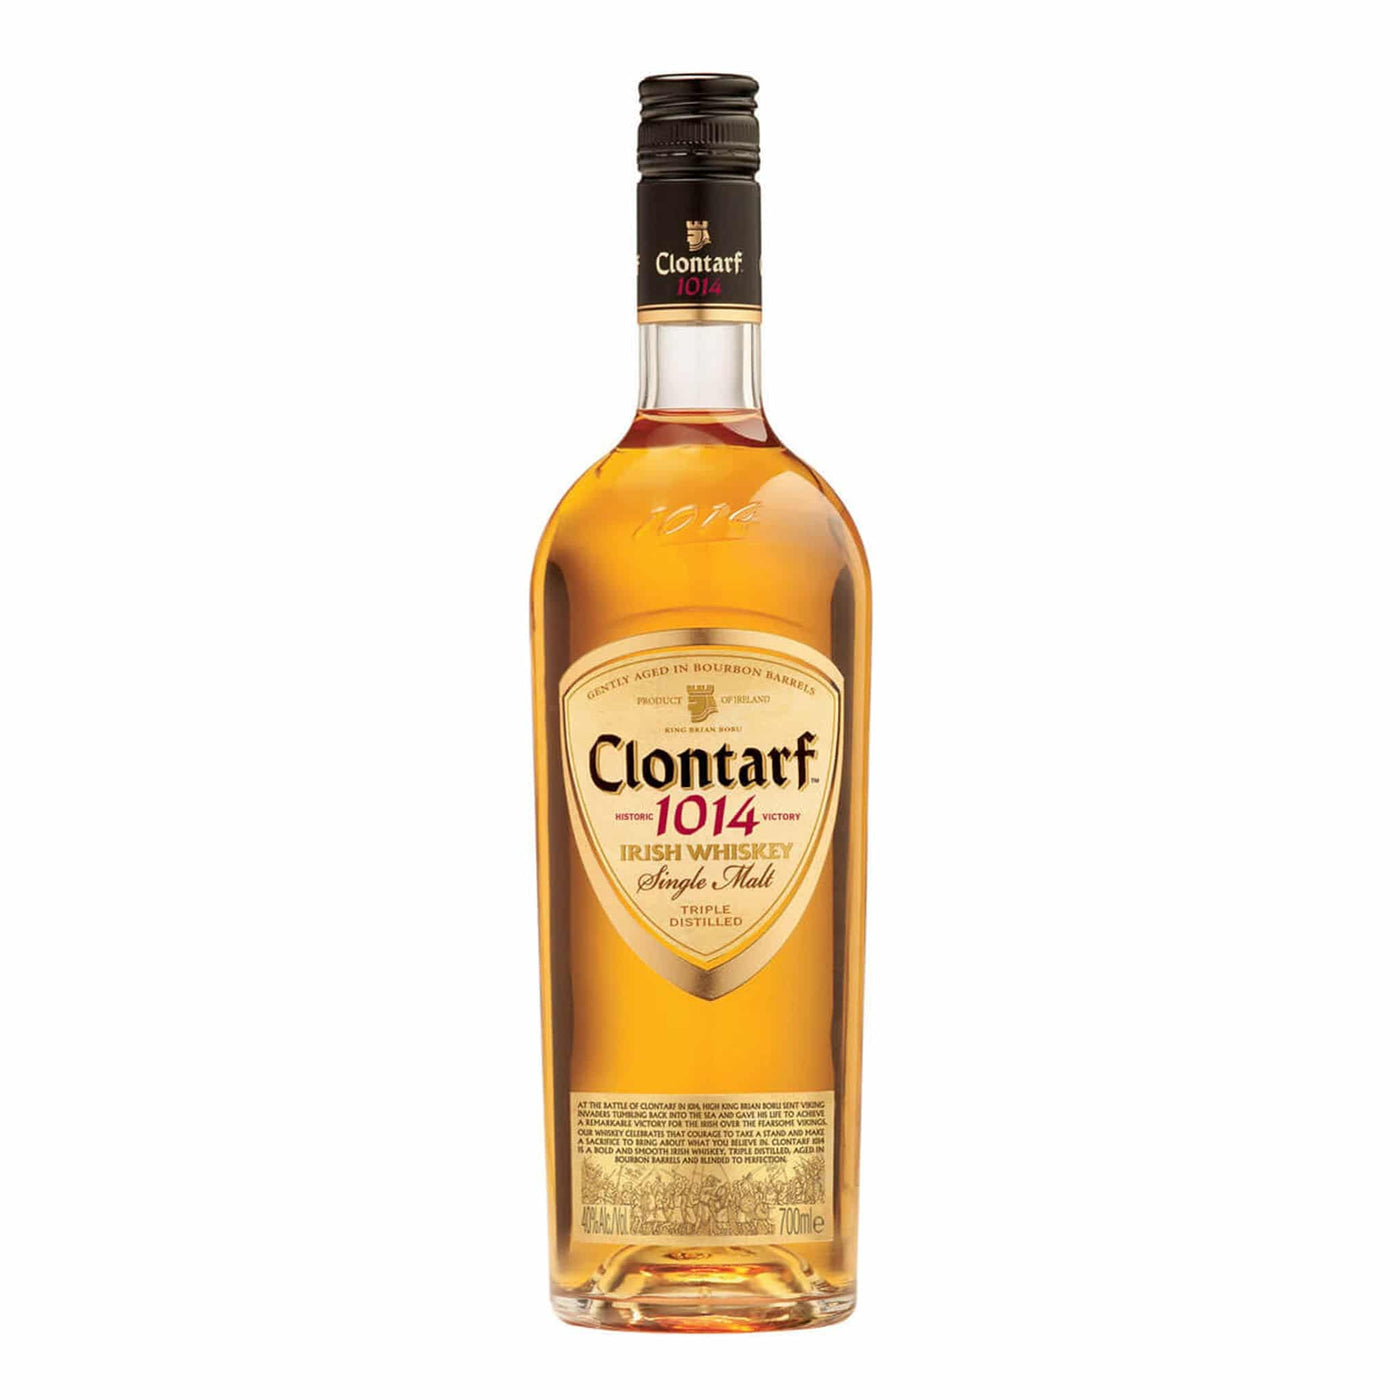 Clontarf Single Malt Whiskey - Spiritly